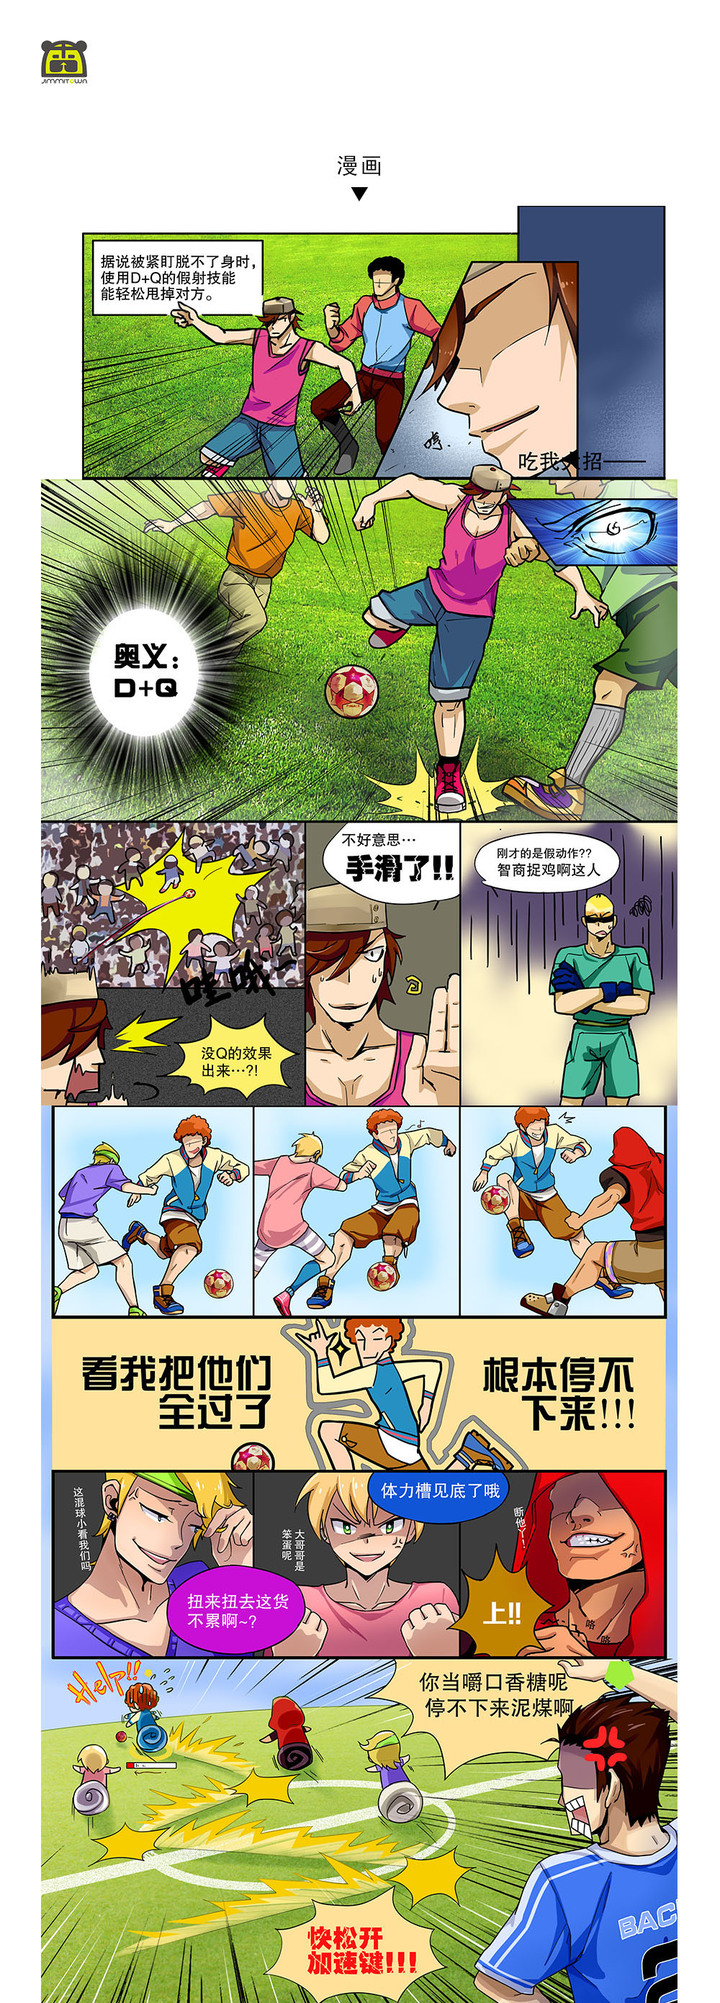 腾讯足球漫画3